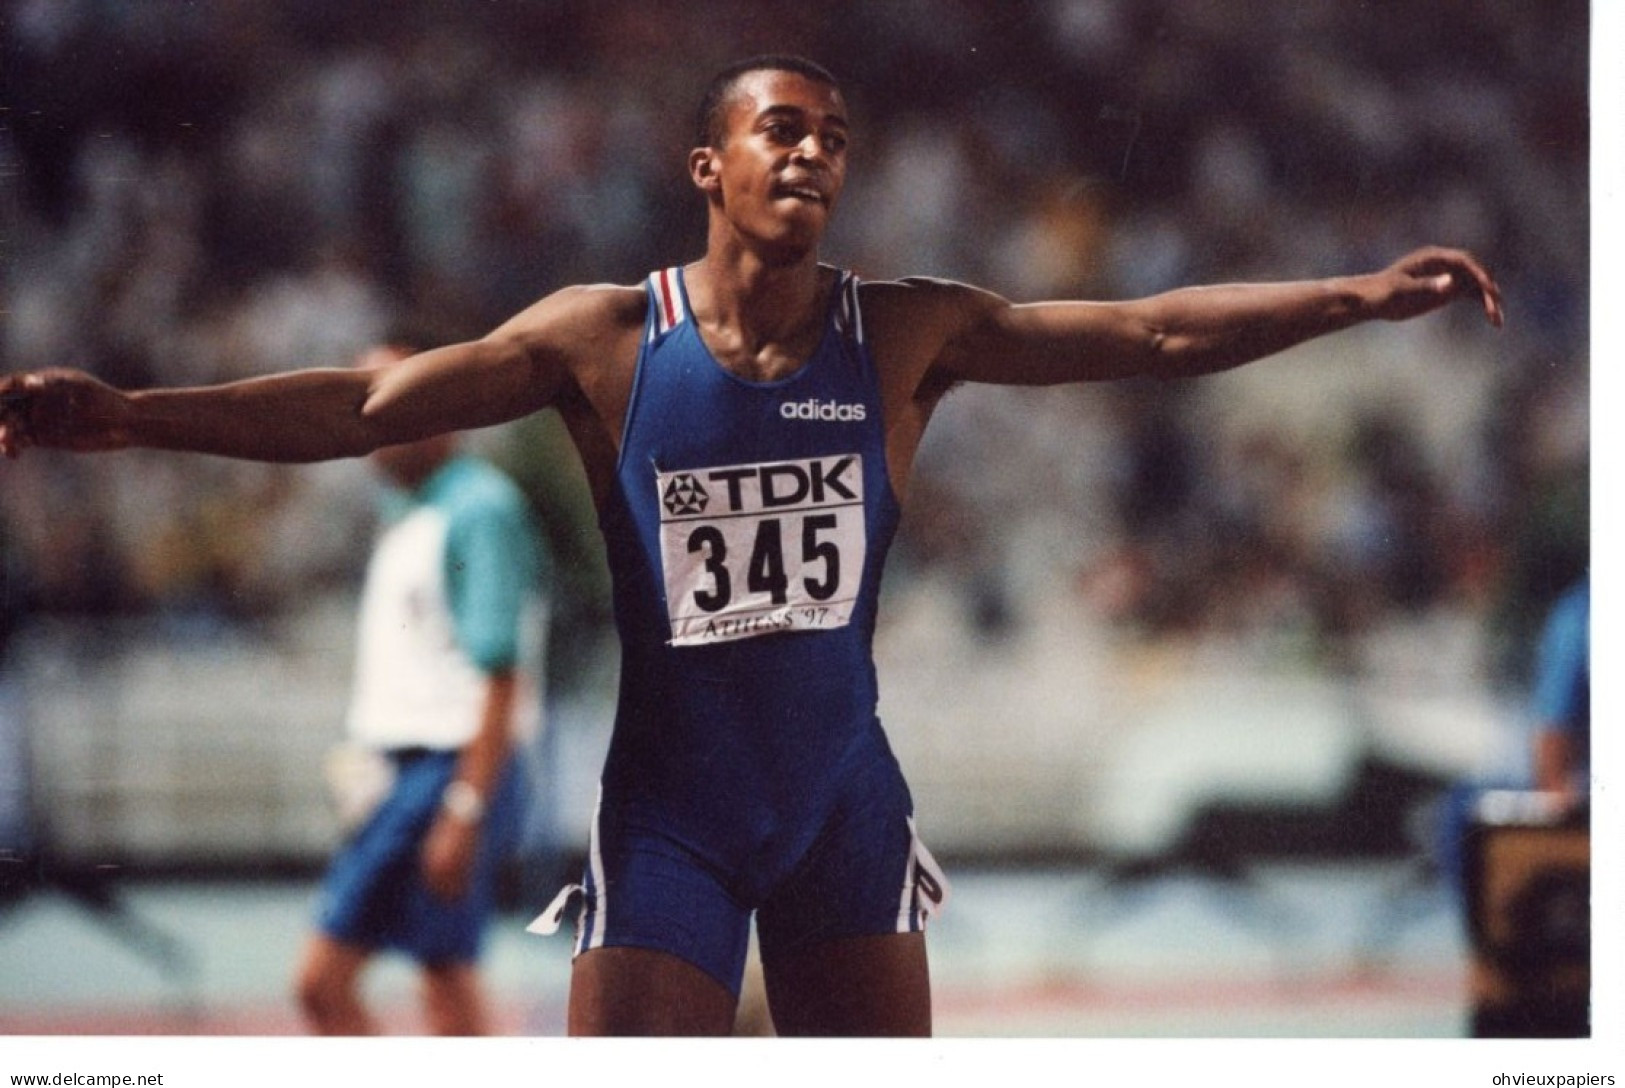 lot de10 photos  ATHLETISME STEPHANE DIAGANA  champion du monde du 400 metres haies à ATHENES 1997